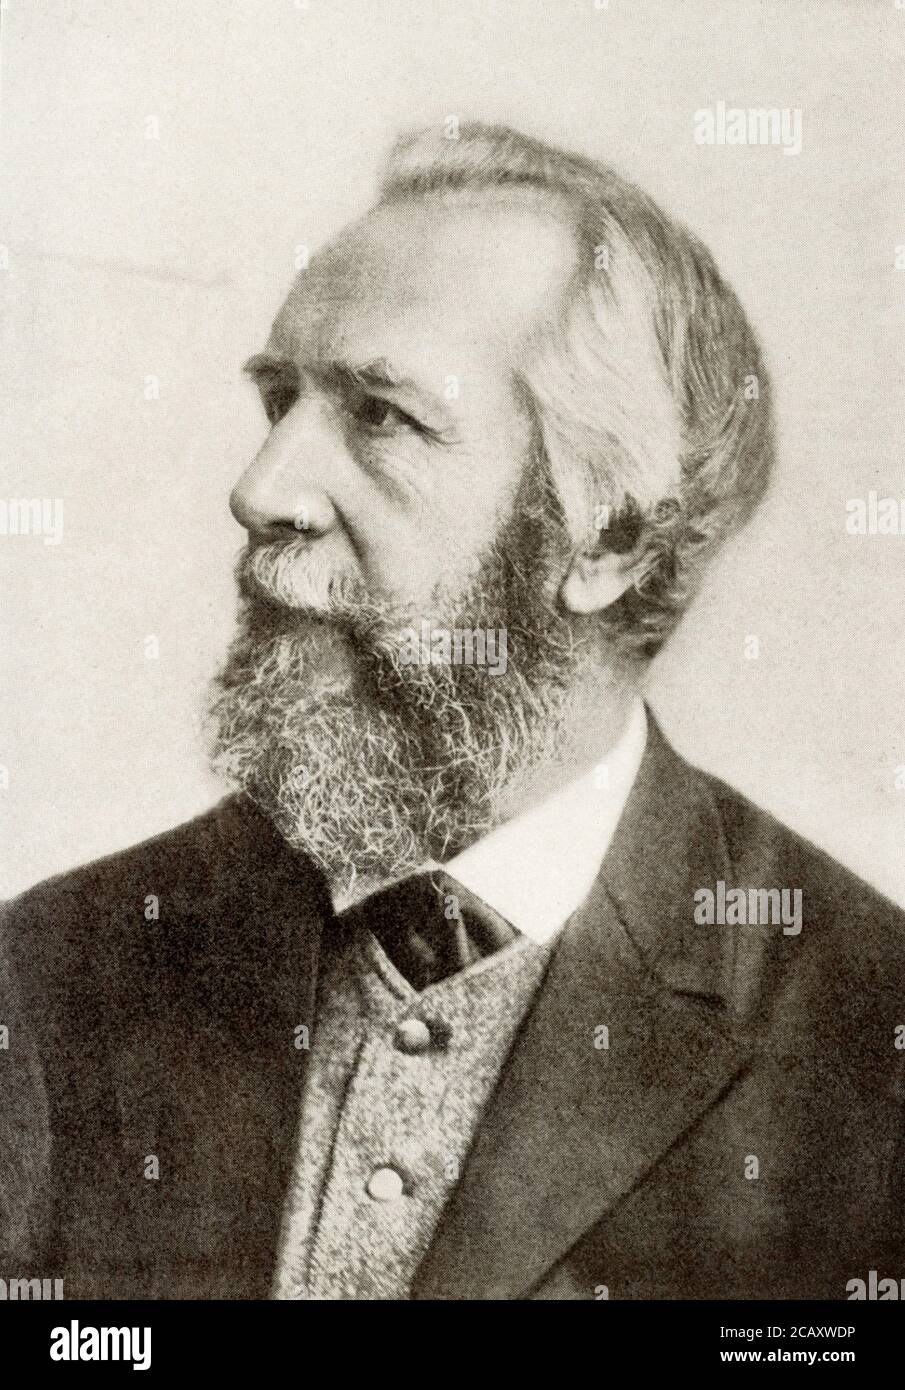 Ernst Haeckel (Ernst Heinrich Philipp August Haeckel) wurde am 16. Februar 1834 in Potsdam (Preußen) geboren. Er starb am 9. August 1919 in Jena, Deutschland. Als deutscher Zoologe und Evolutionist war er ein starker Befürworter des Darwinismus und schlug neue Vorstellungen von der evolutionären Herabkunft des Menschen vor. Stockfoto